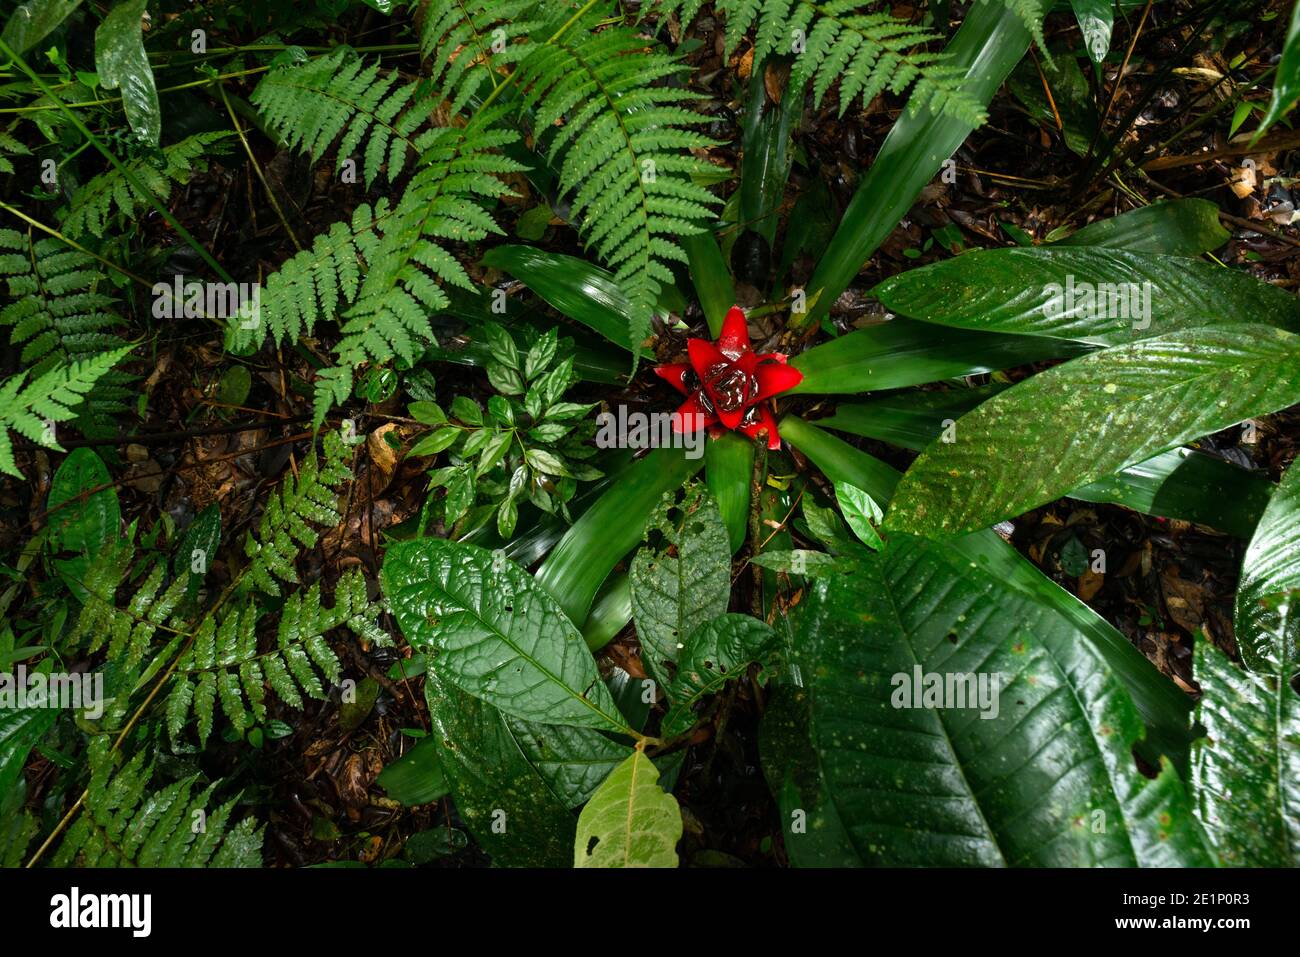 Lush vegetation at the forest floor of the Atlantic Rainforest of SE Brazil Stock Photo